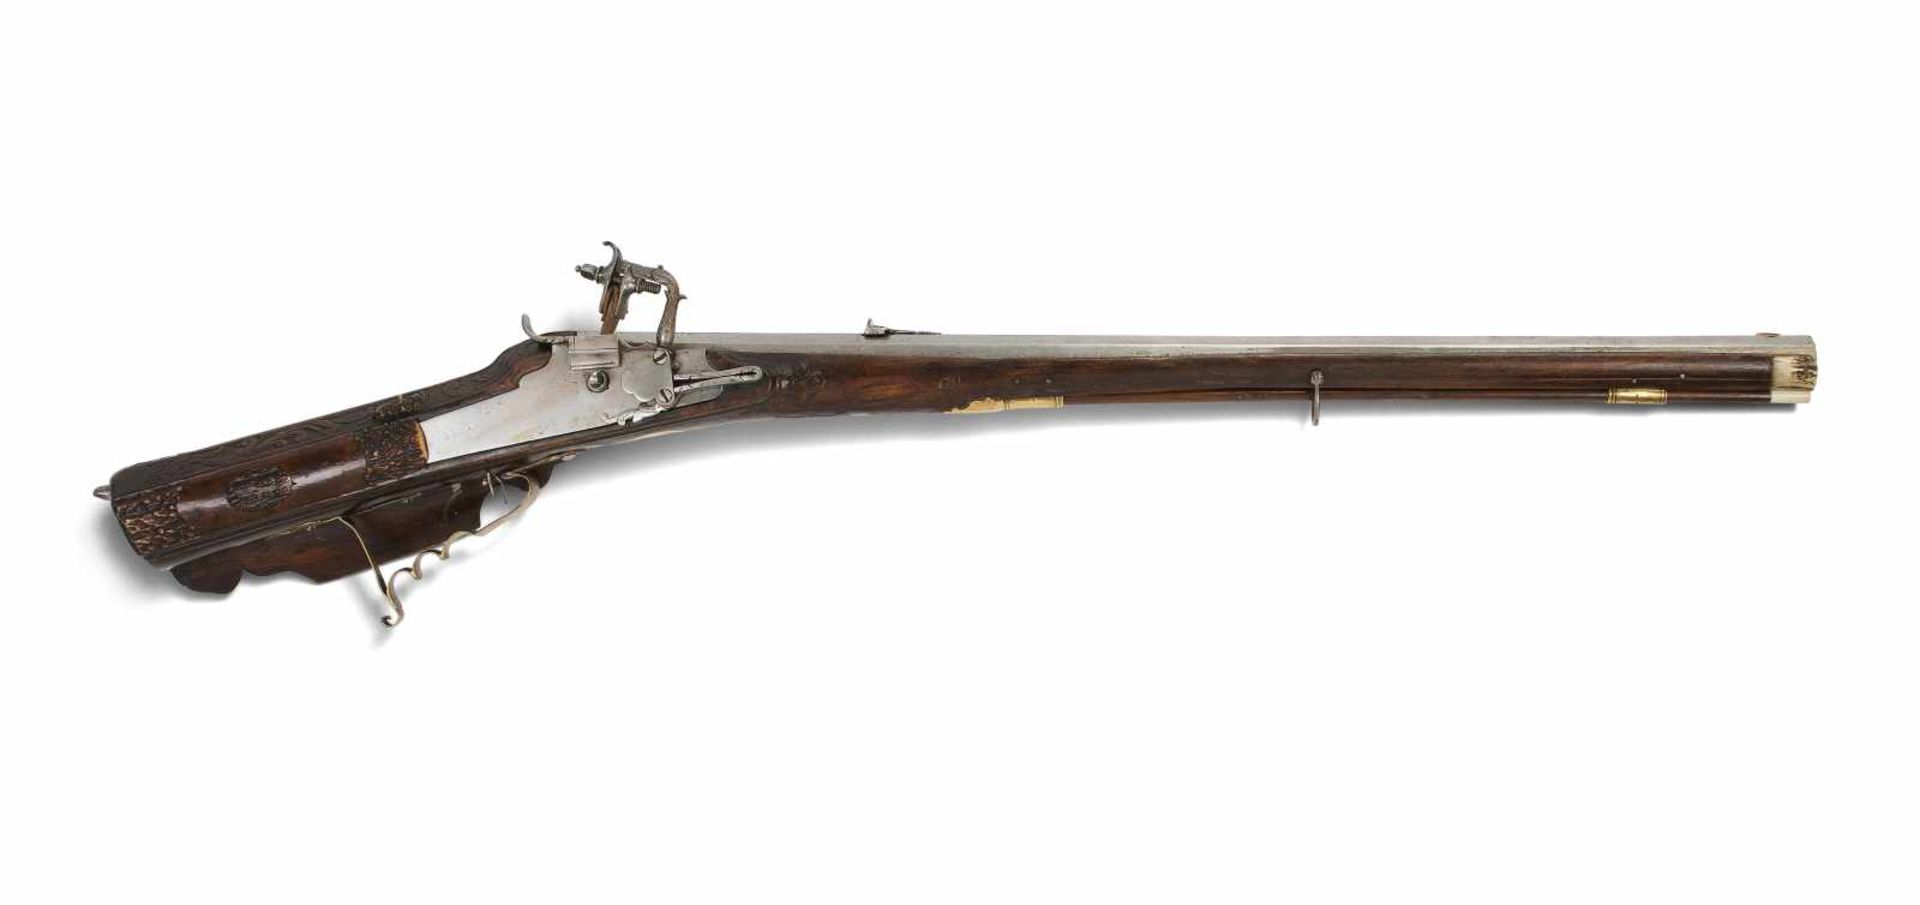 RadschlossgewehrBöhmisch, um 1700. Oktogonallauf (L76,5cm), Kal. 14mm, gezogen. Visier und